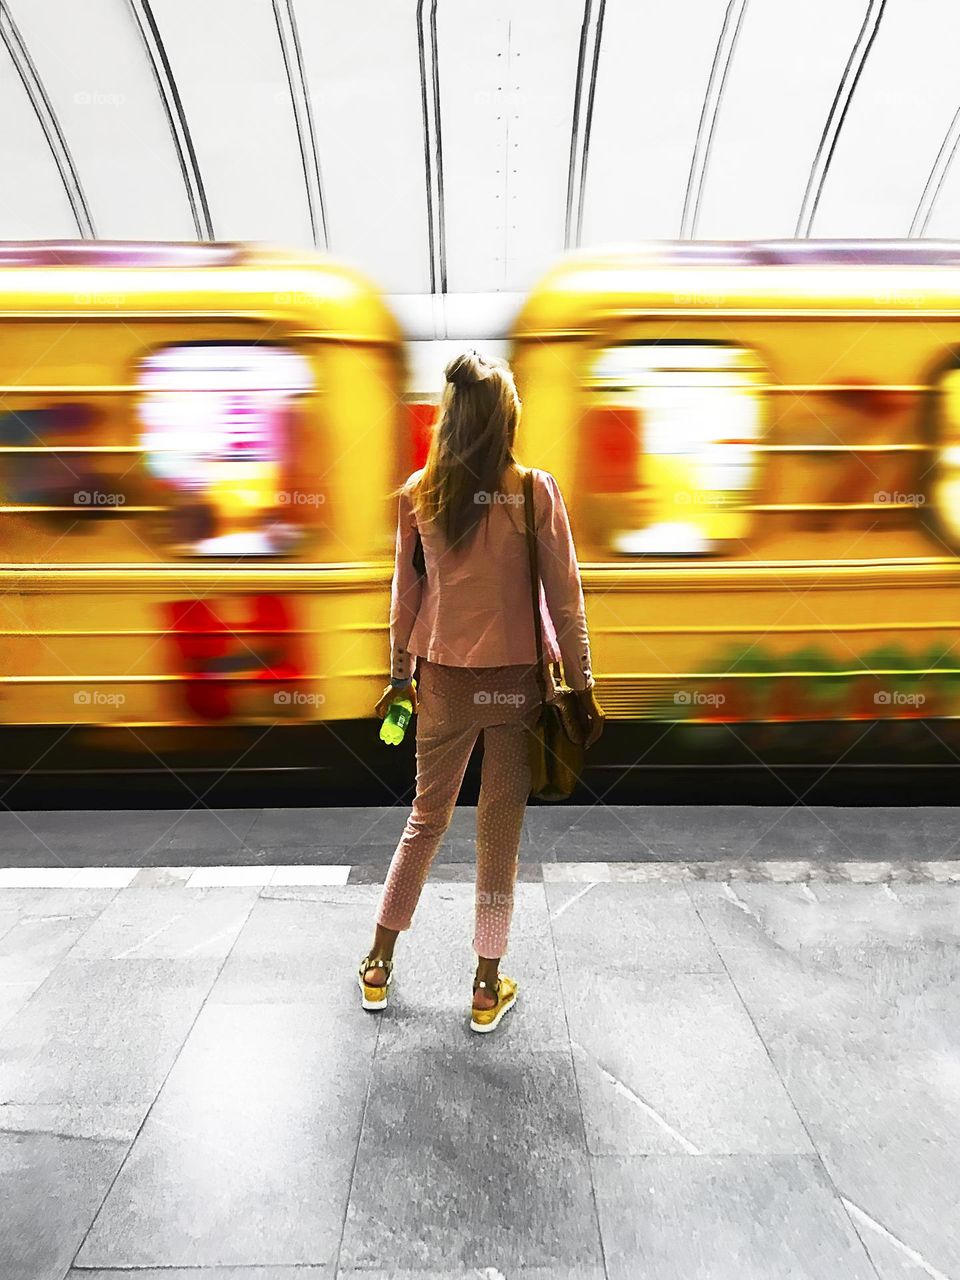 Yellow train 